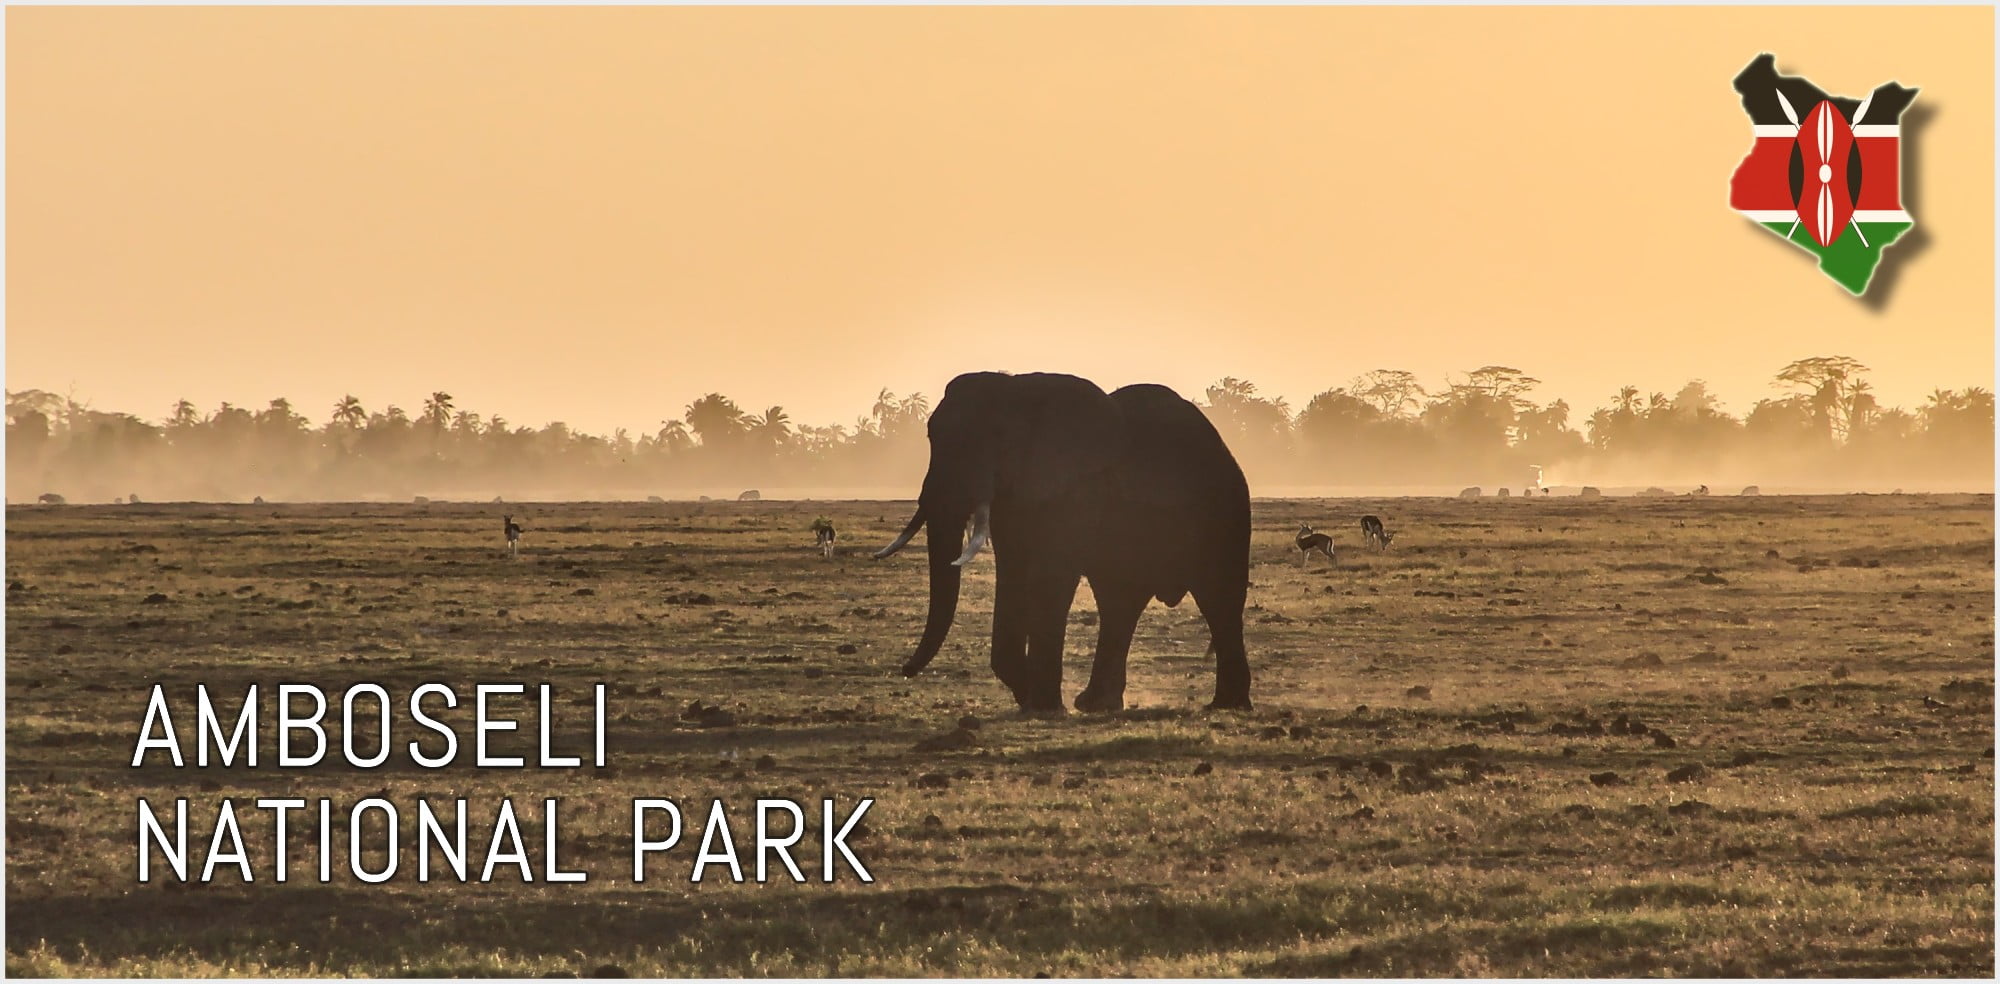 2-day safari in Amboseli National Park, Kenya | FinnsAway